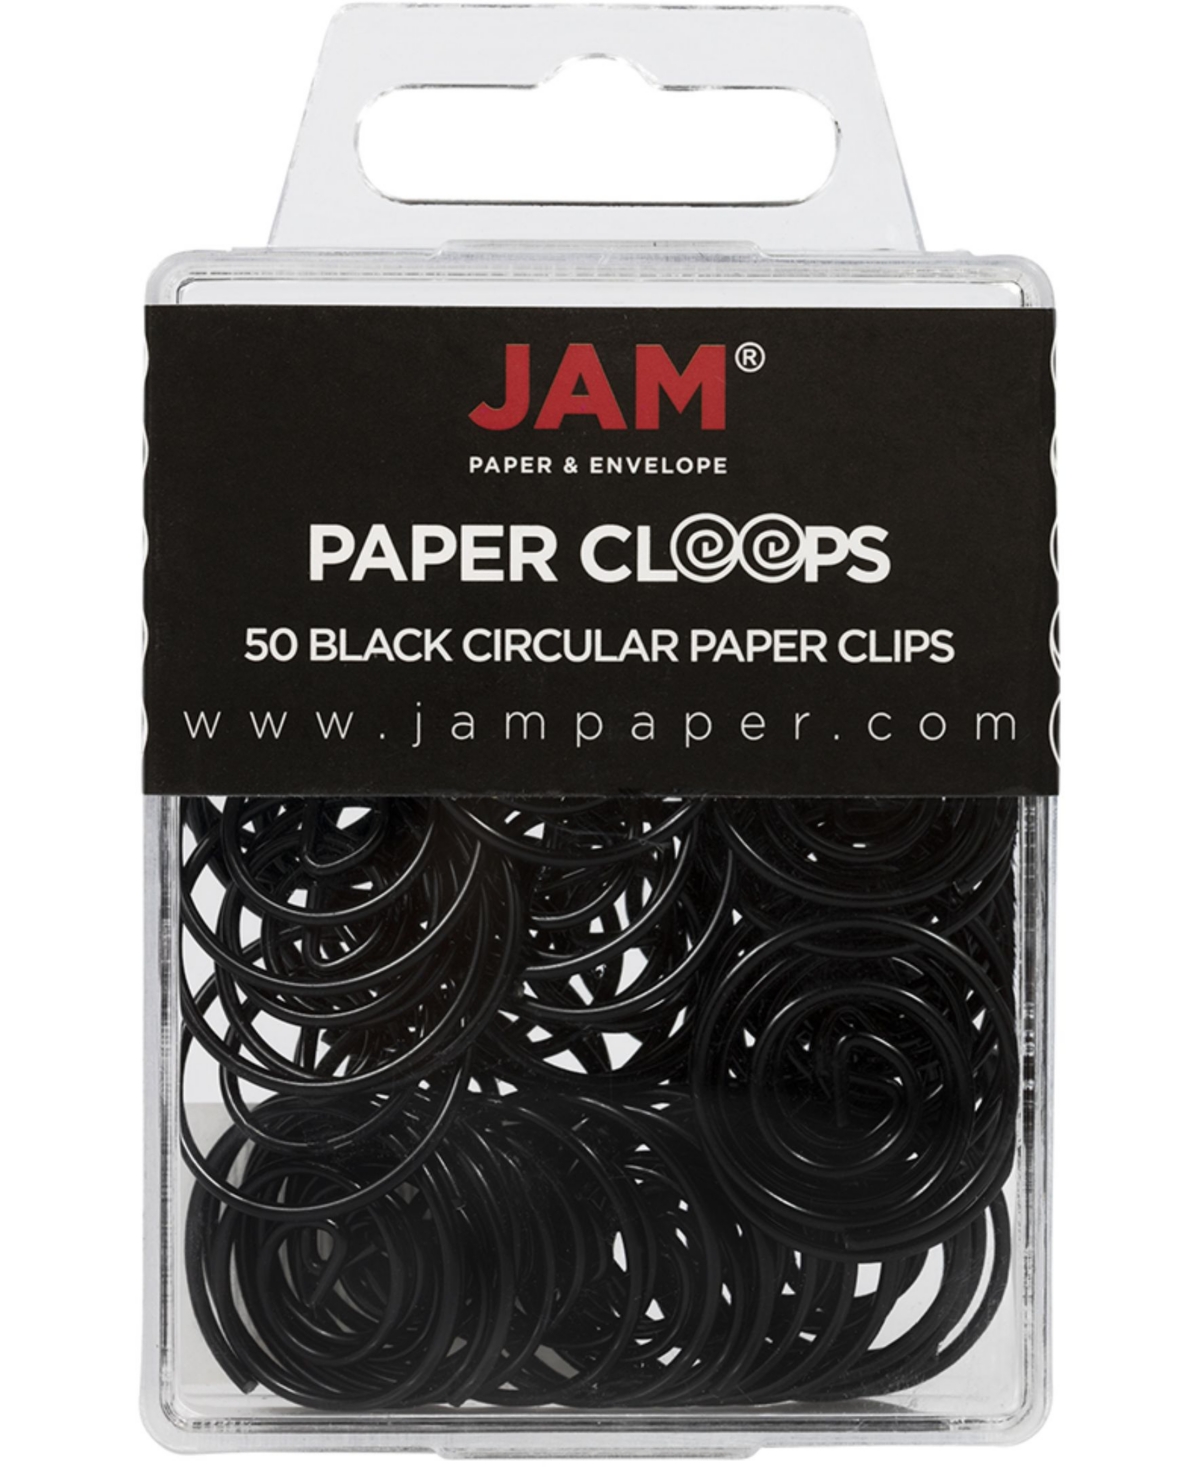 Jam Paper Circular Paper Clips In Black